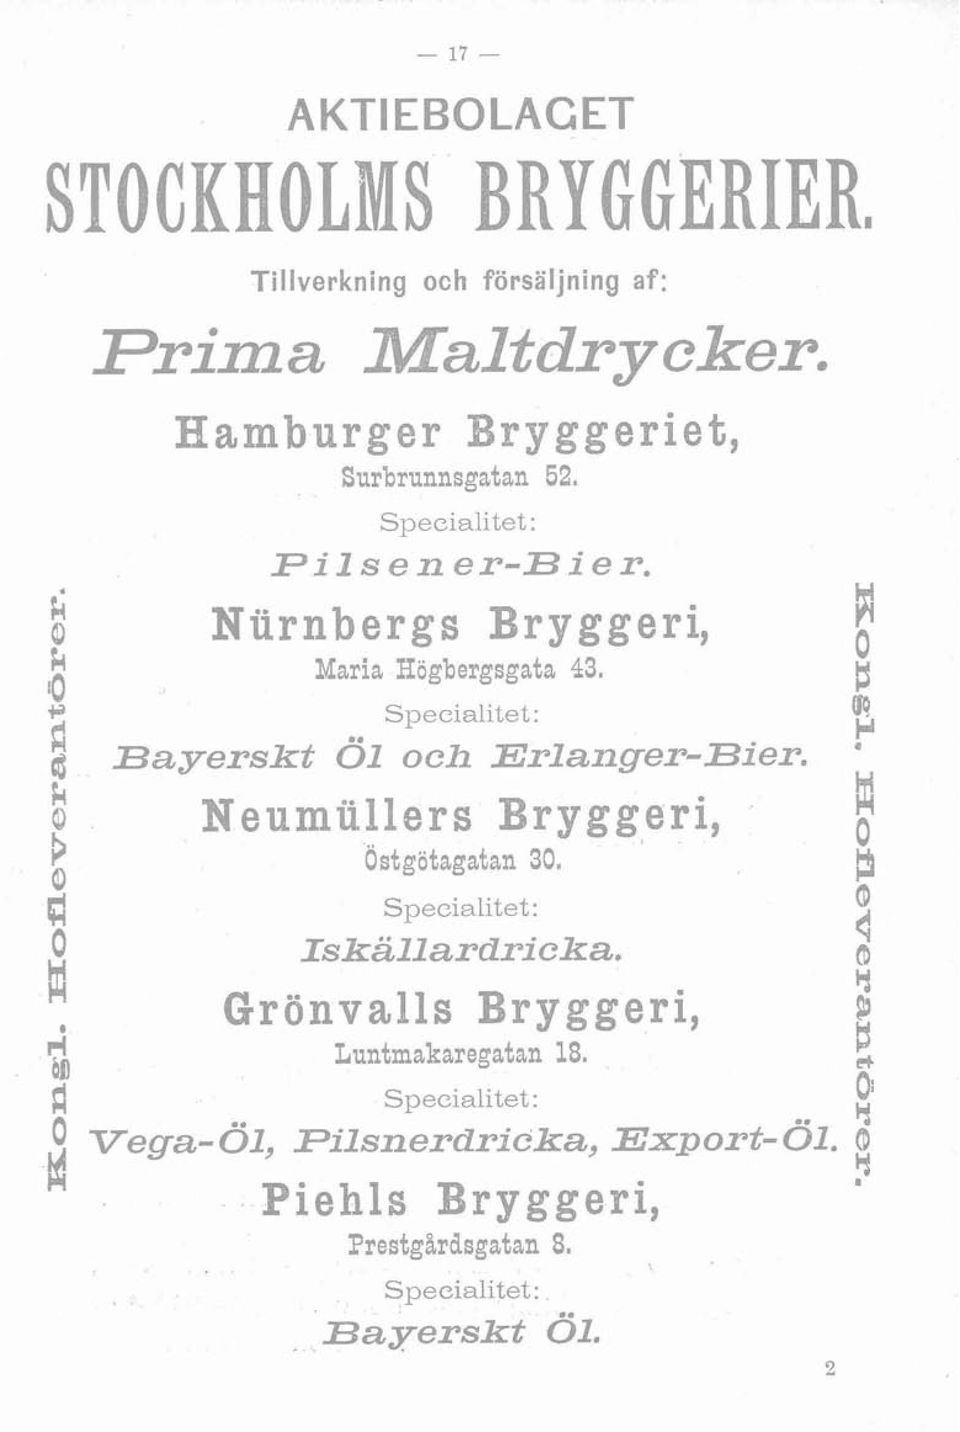 i M Neumiillers Bryggeri, Ostgötagatan 30. i! Specialitet : O Iskallardricka.